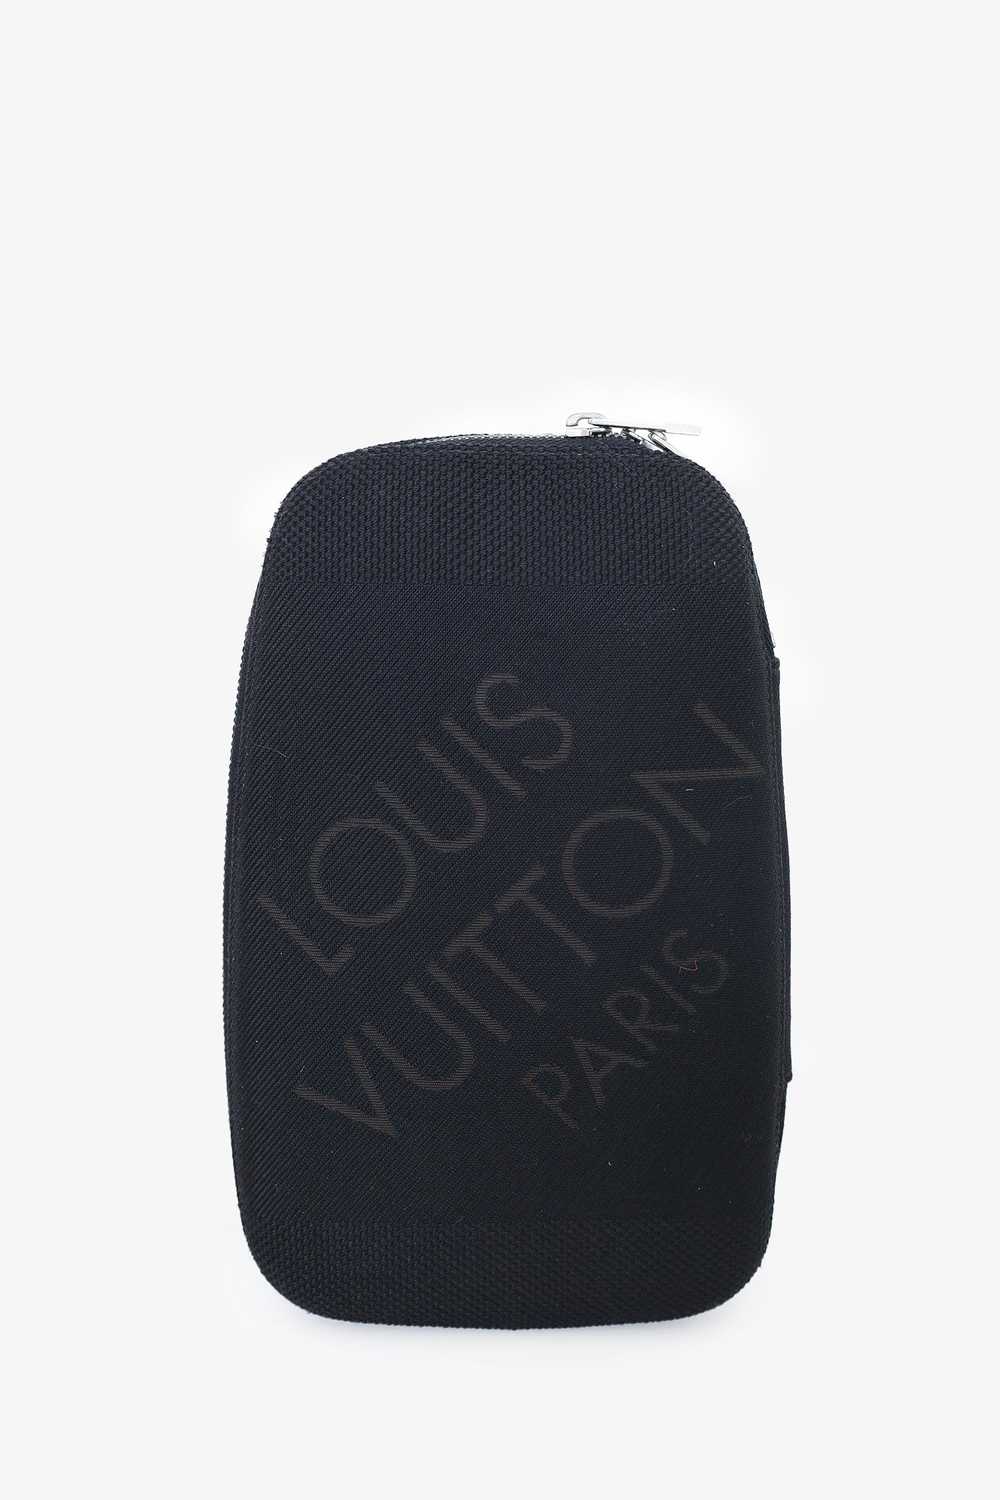 Louis Vuitton 2005 Damier Geant Mage Terre Bum Bag - image 1